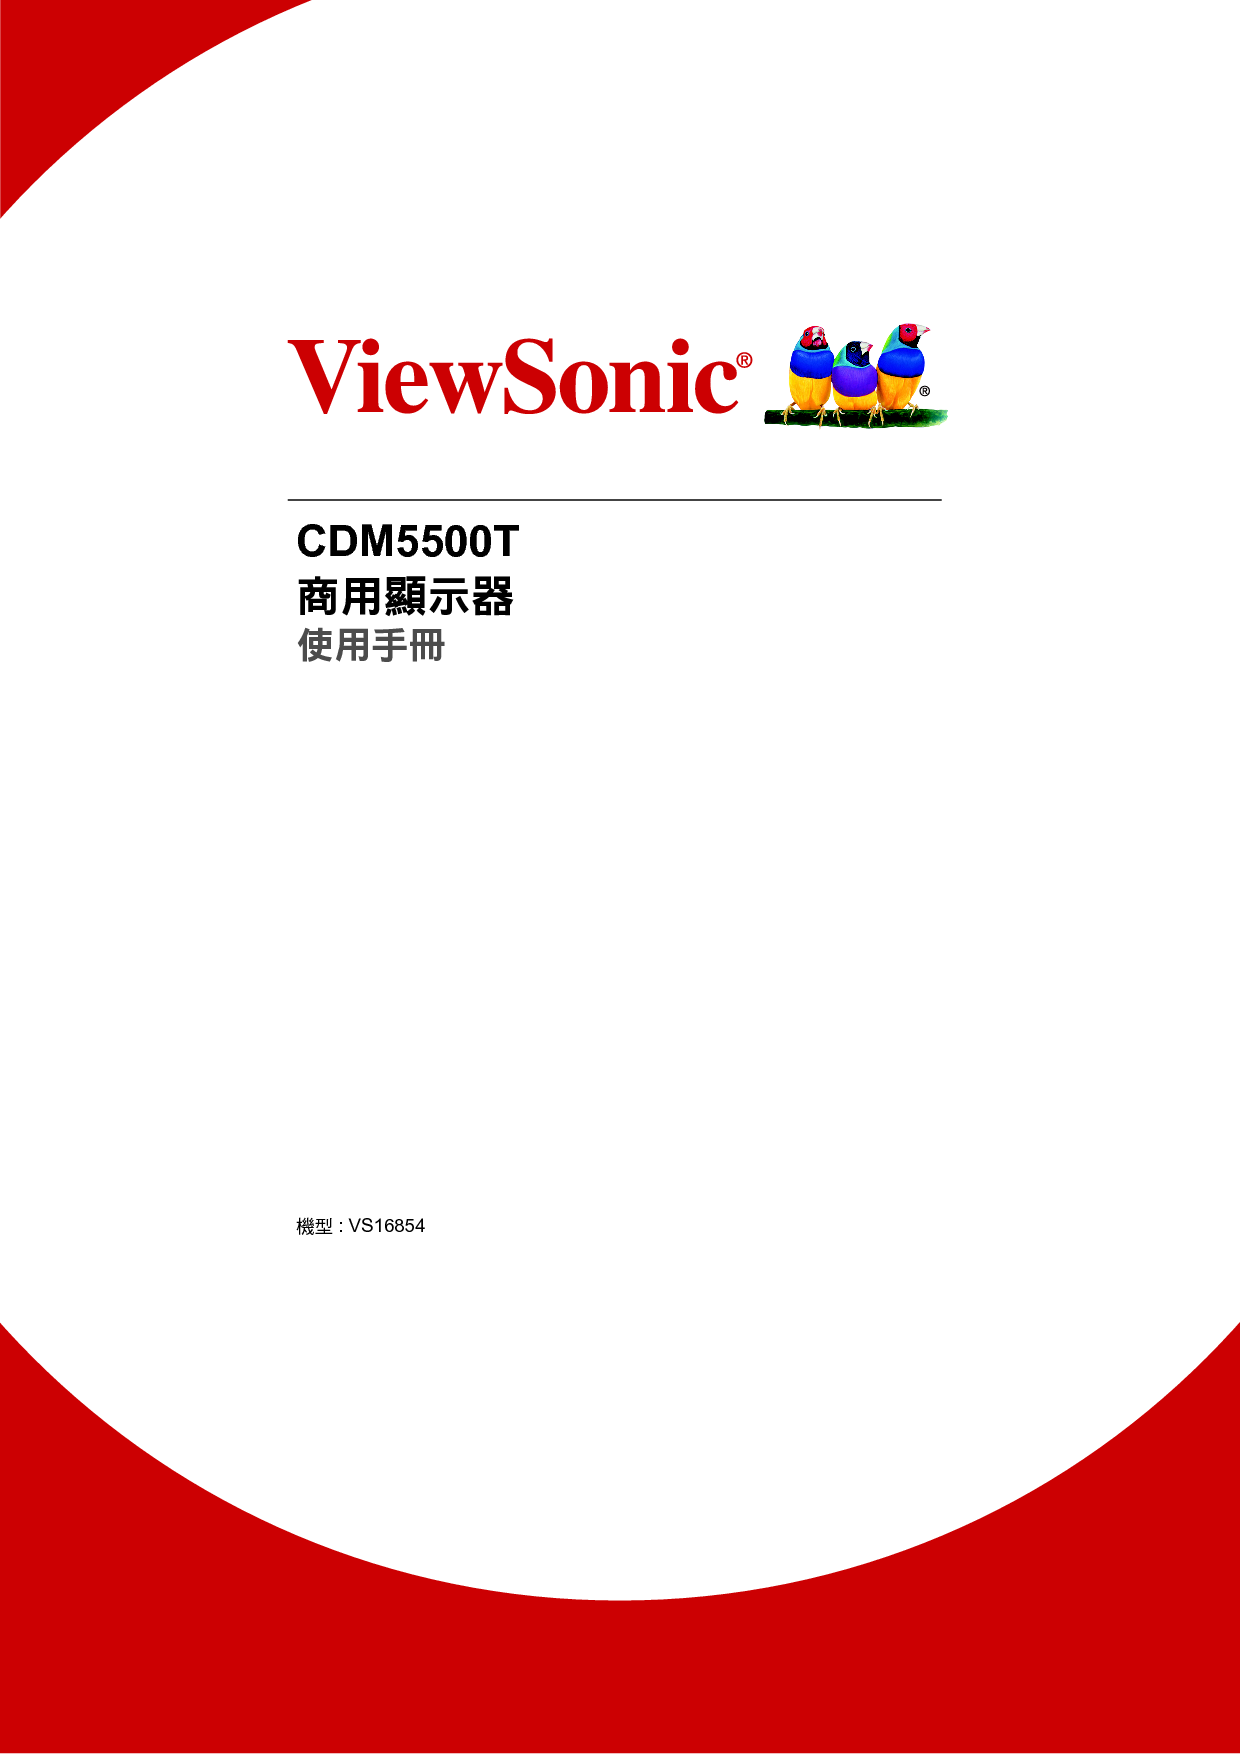 优派 ViewSonic CDM5500T 繁体 使用说明书 封面